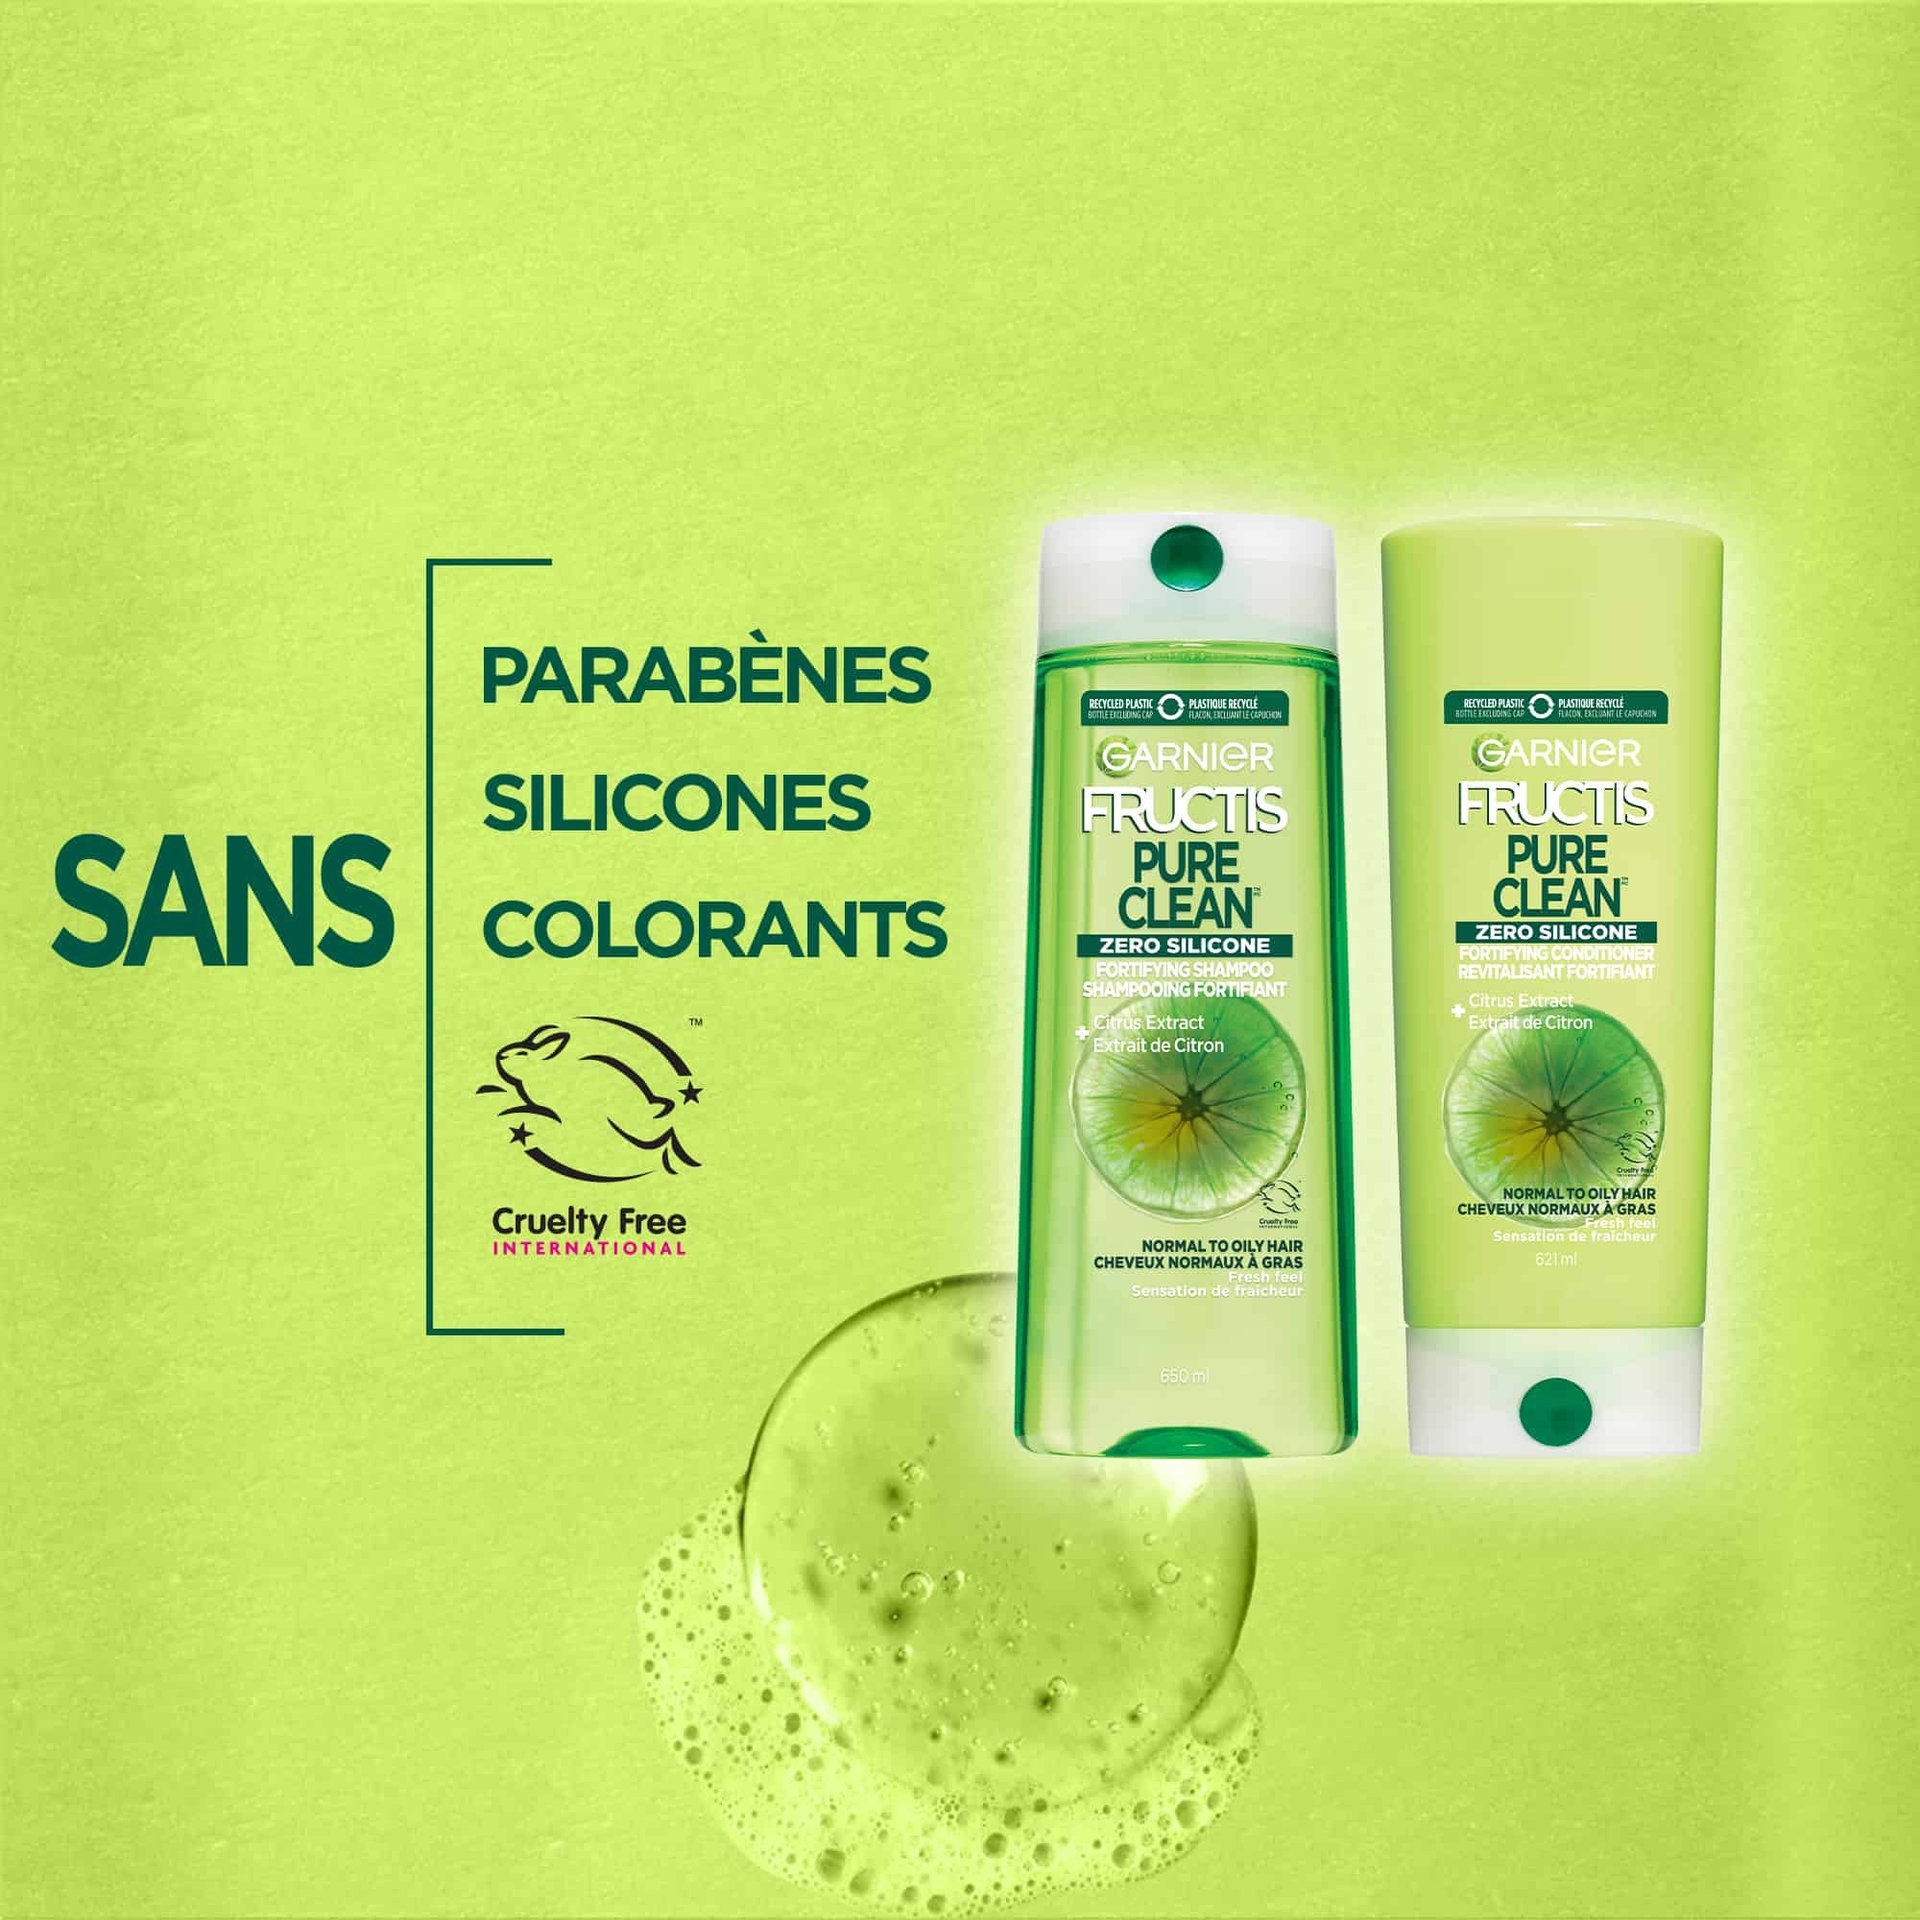 GAR WEB BAN Fructis Pure Clean 3 FR